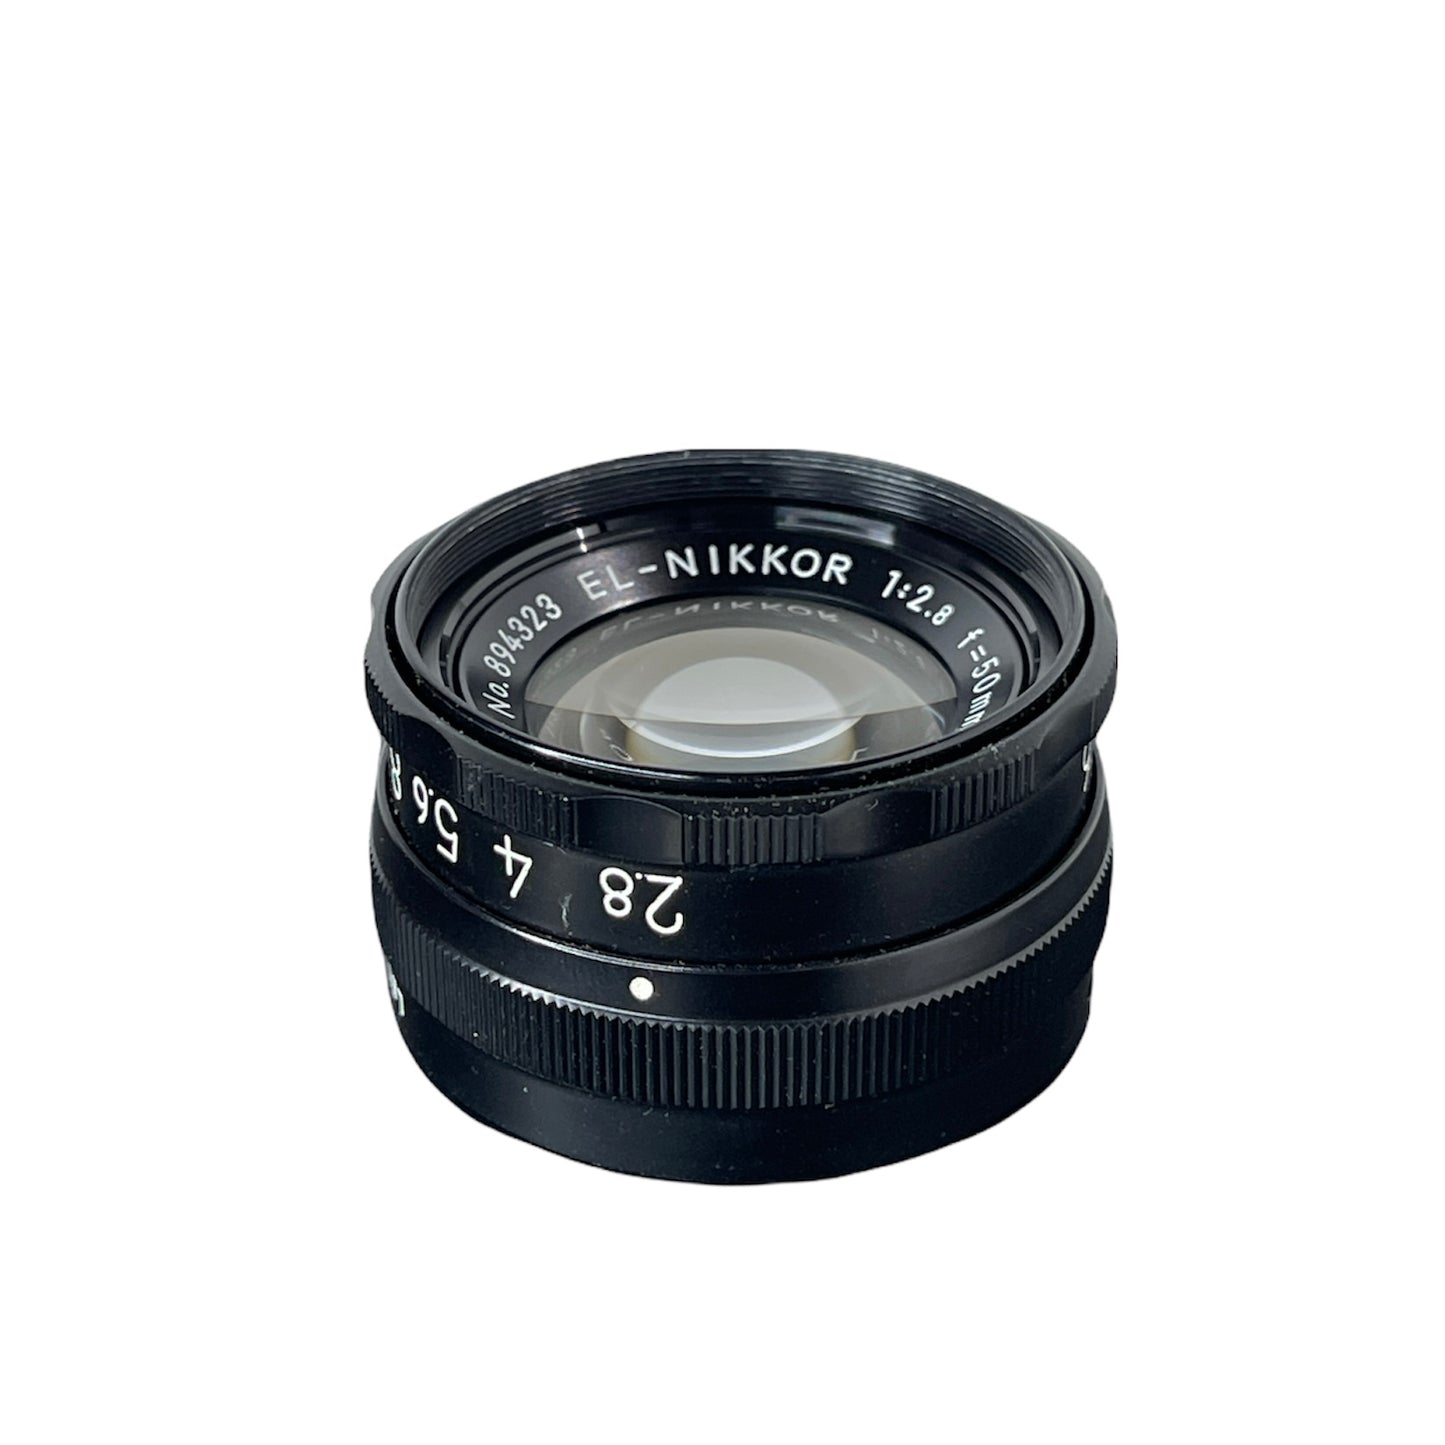 Nikon El-Nikkor 50mm f/2.8 Beseler Lens Board L#894323 Reno